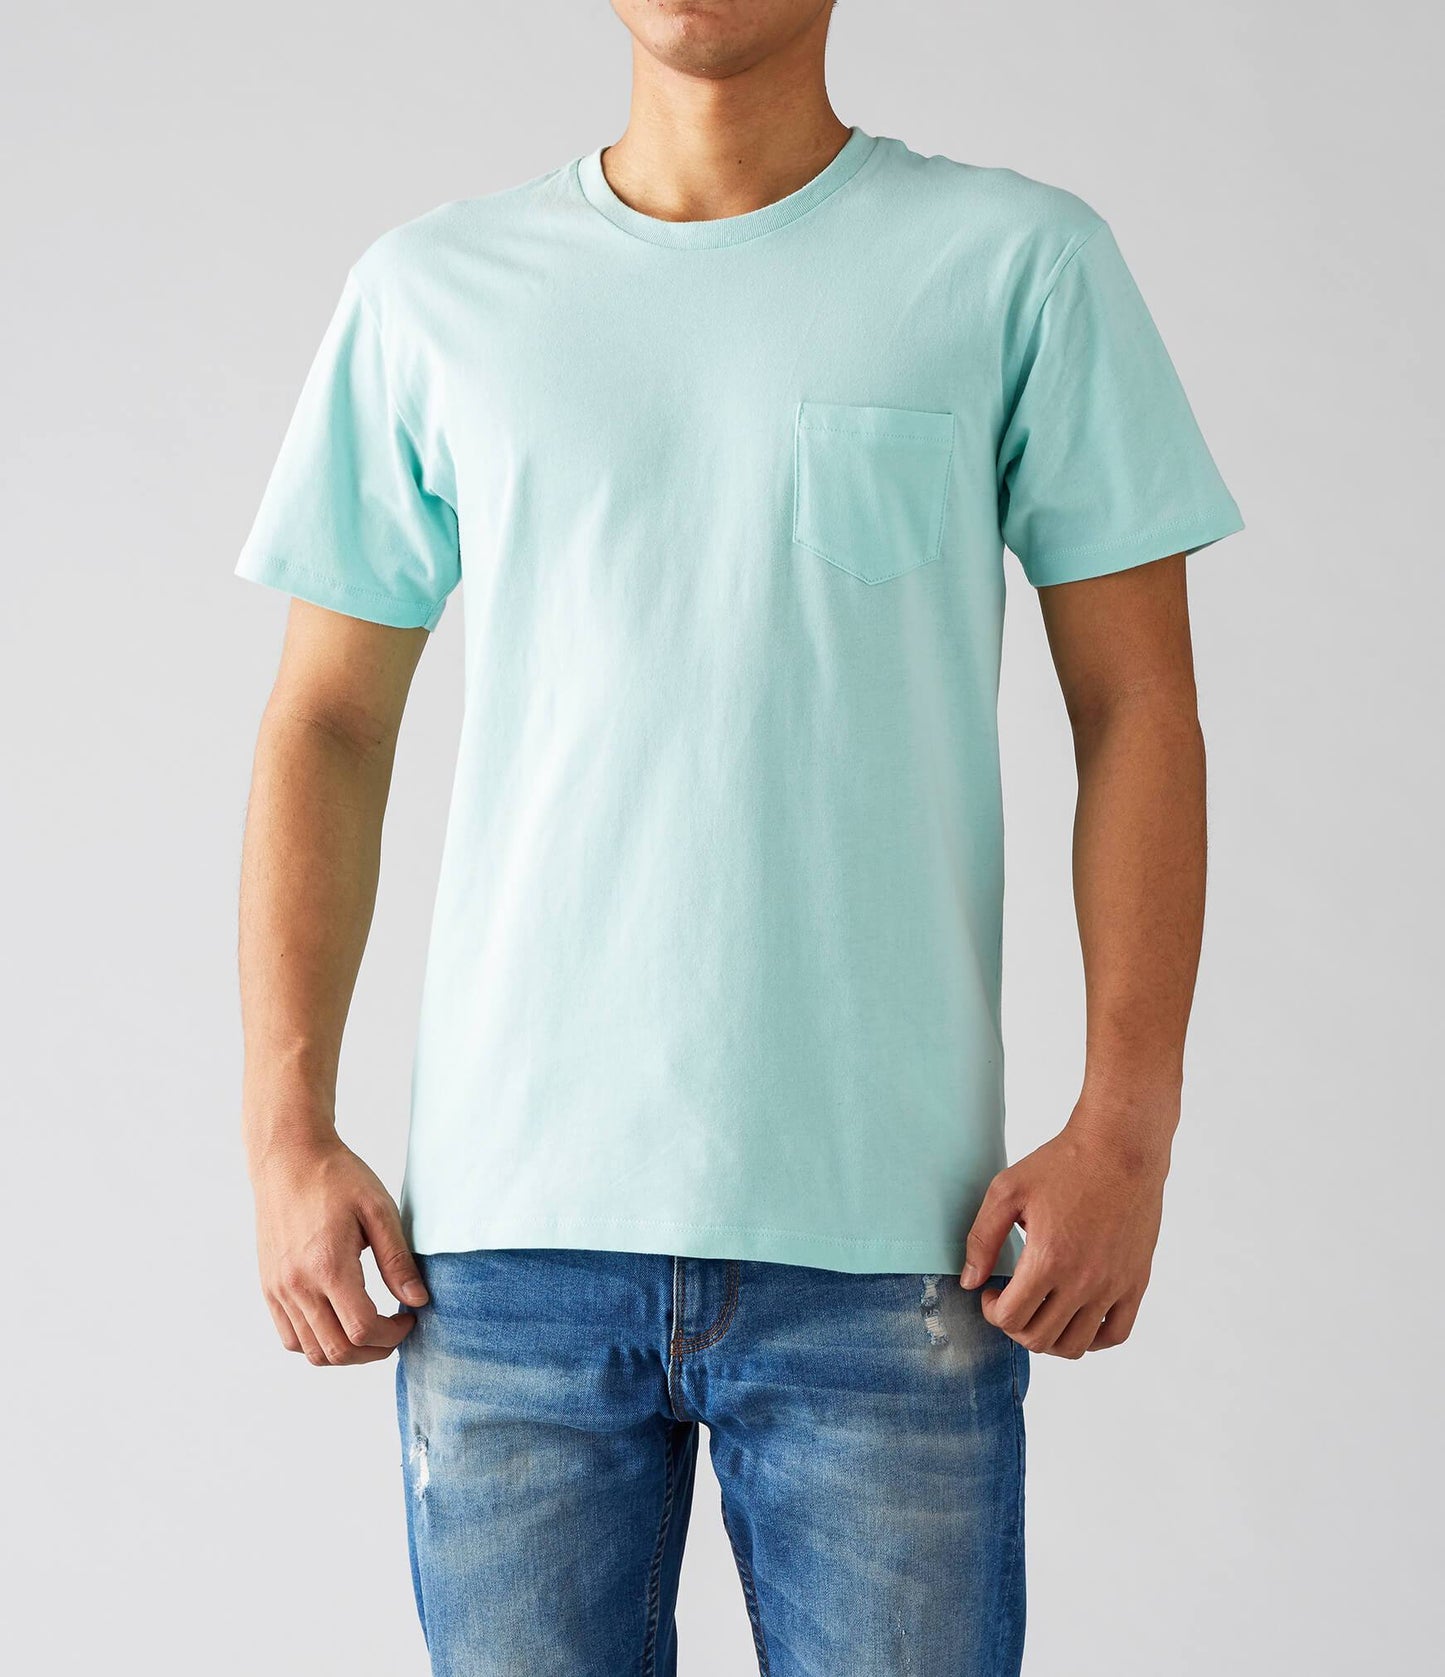 ポケット Tシャツ | メンズ | 1枚 | PKT-124 | フロストピンク